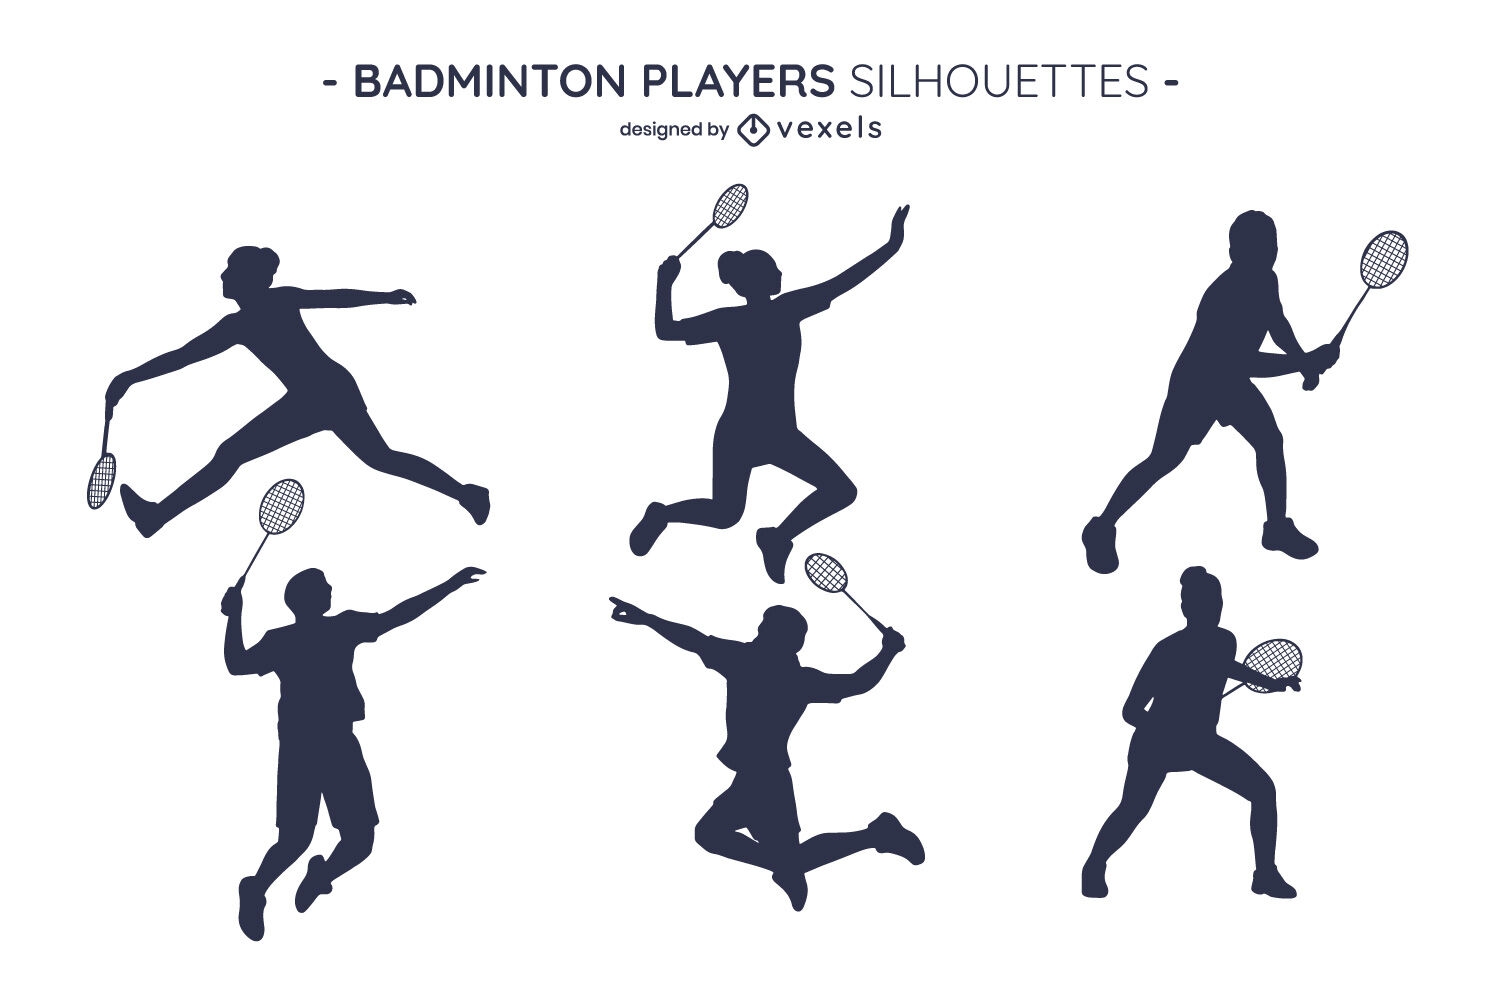 Badmintonspieler Silhouetten eingestellt